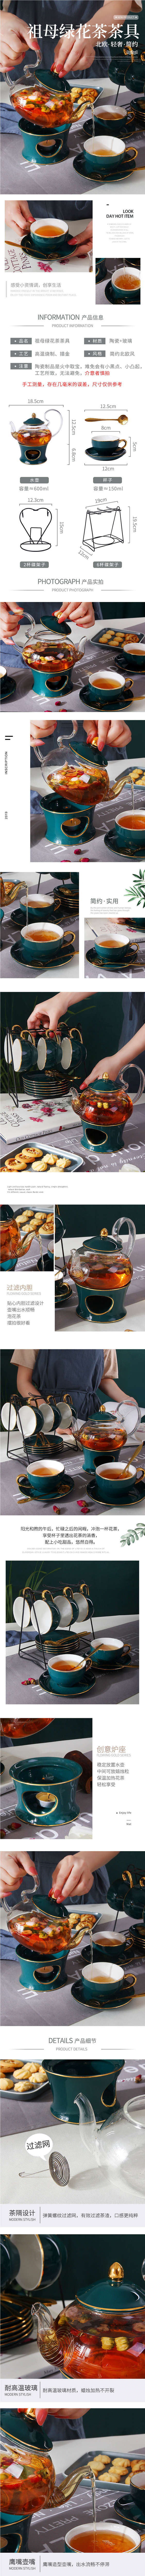 淘宝美工青萌草咖啡杯套装欧式陶瓷茶茶具英式茶具套装详情页作品